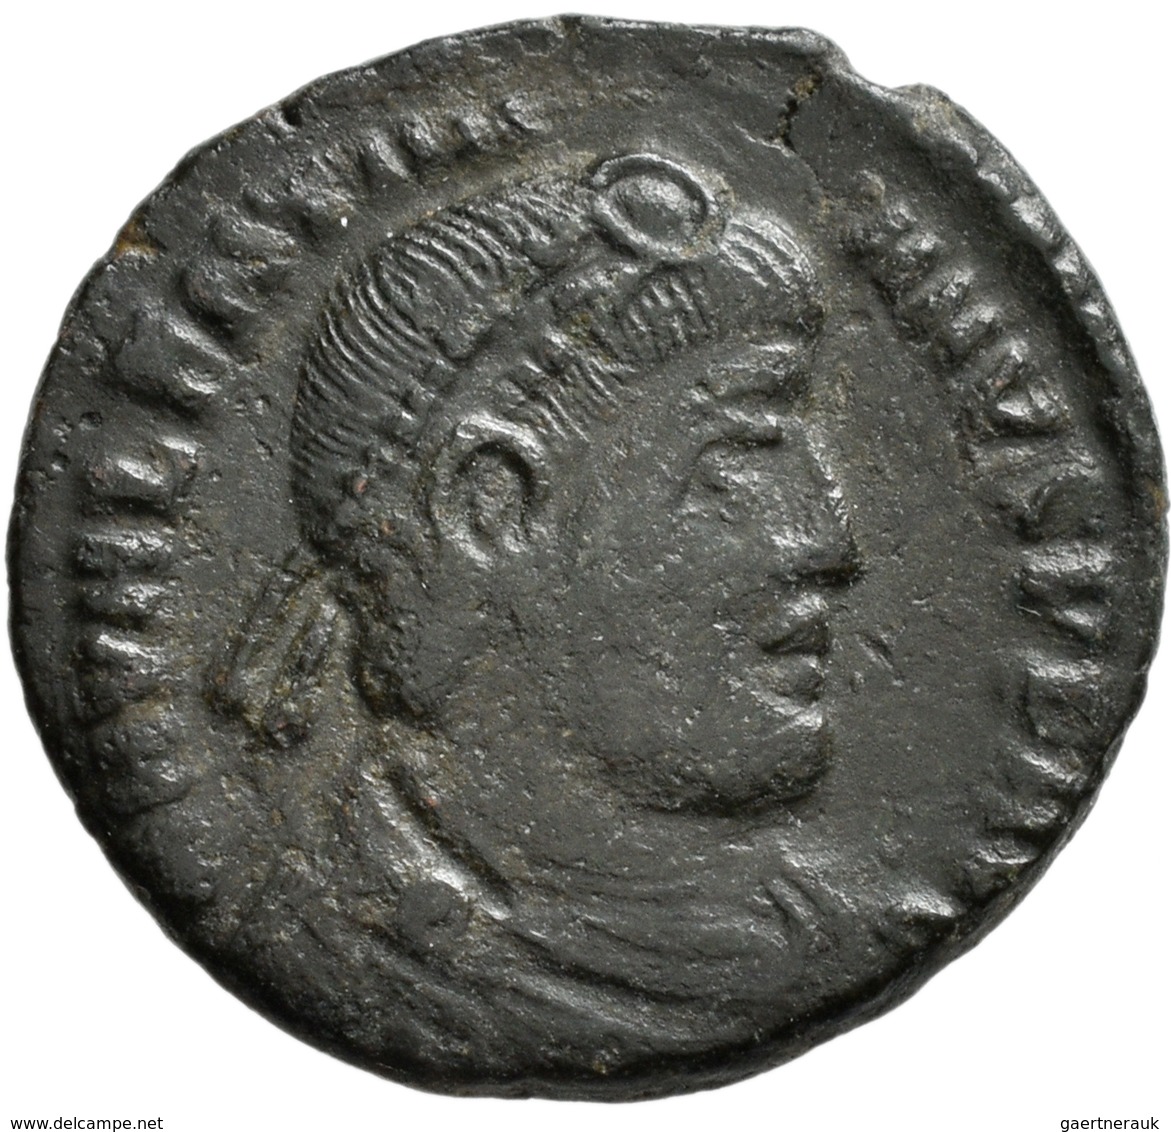 Antike: 48 Bronzemünzen aus der Römischen Kaiserzeit; Antoniniane (z.B. Maximianus, Probus), Æ Folli